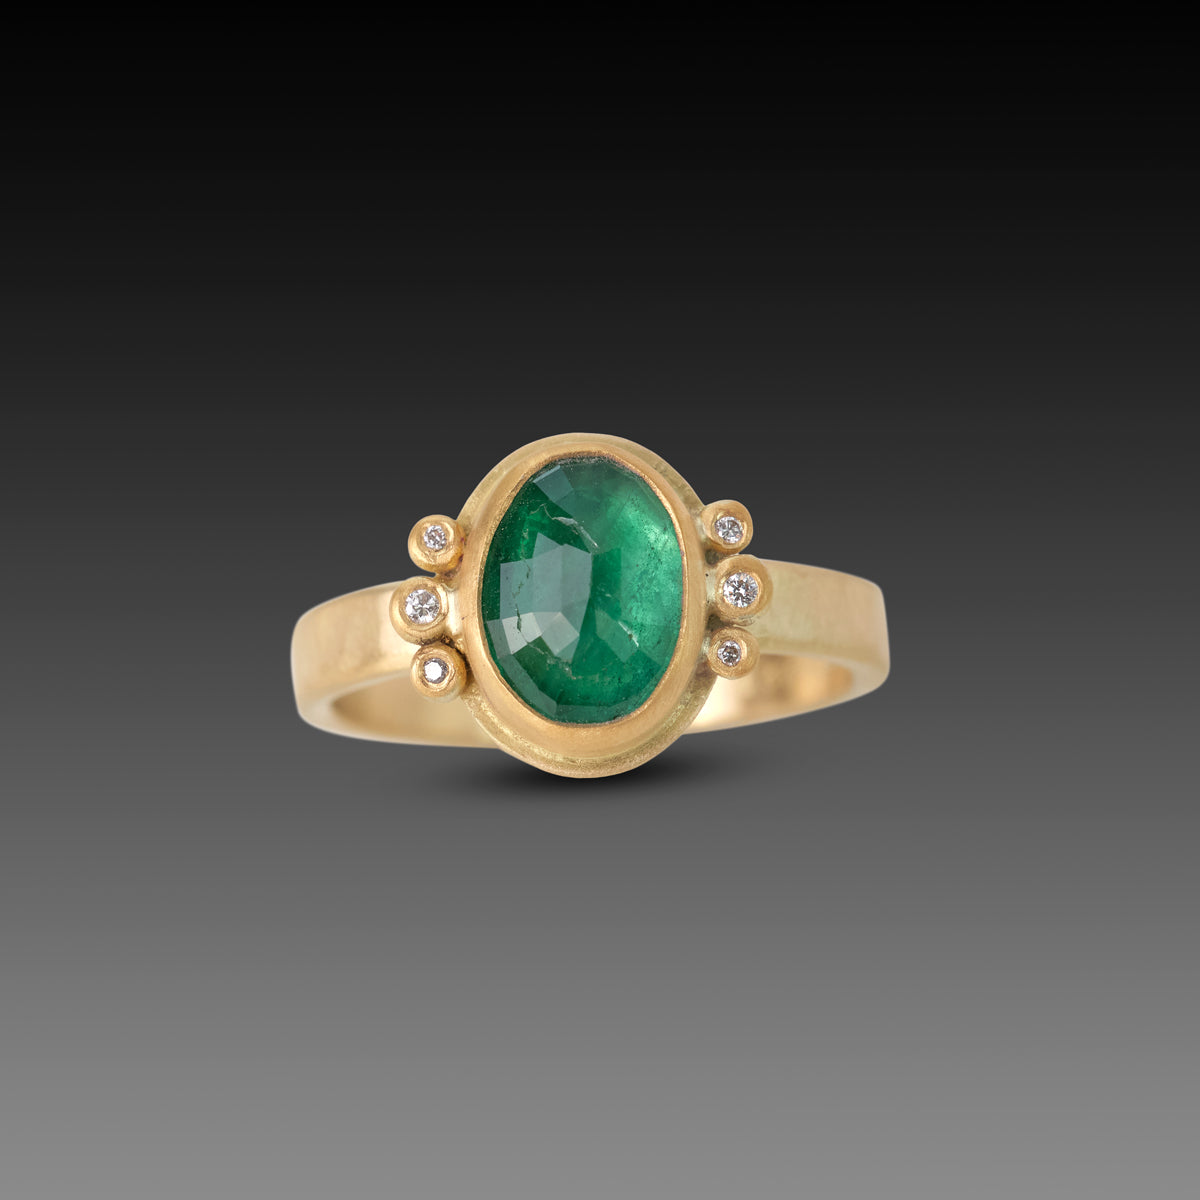 Emerald Ring at Rs 15015 | Kochin | Kochi | ID: 20277827430